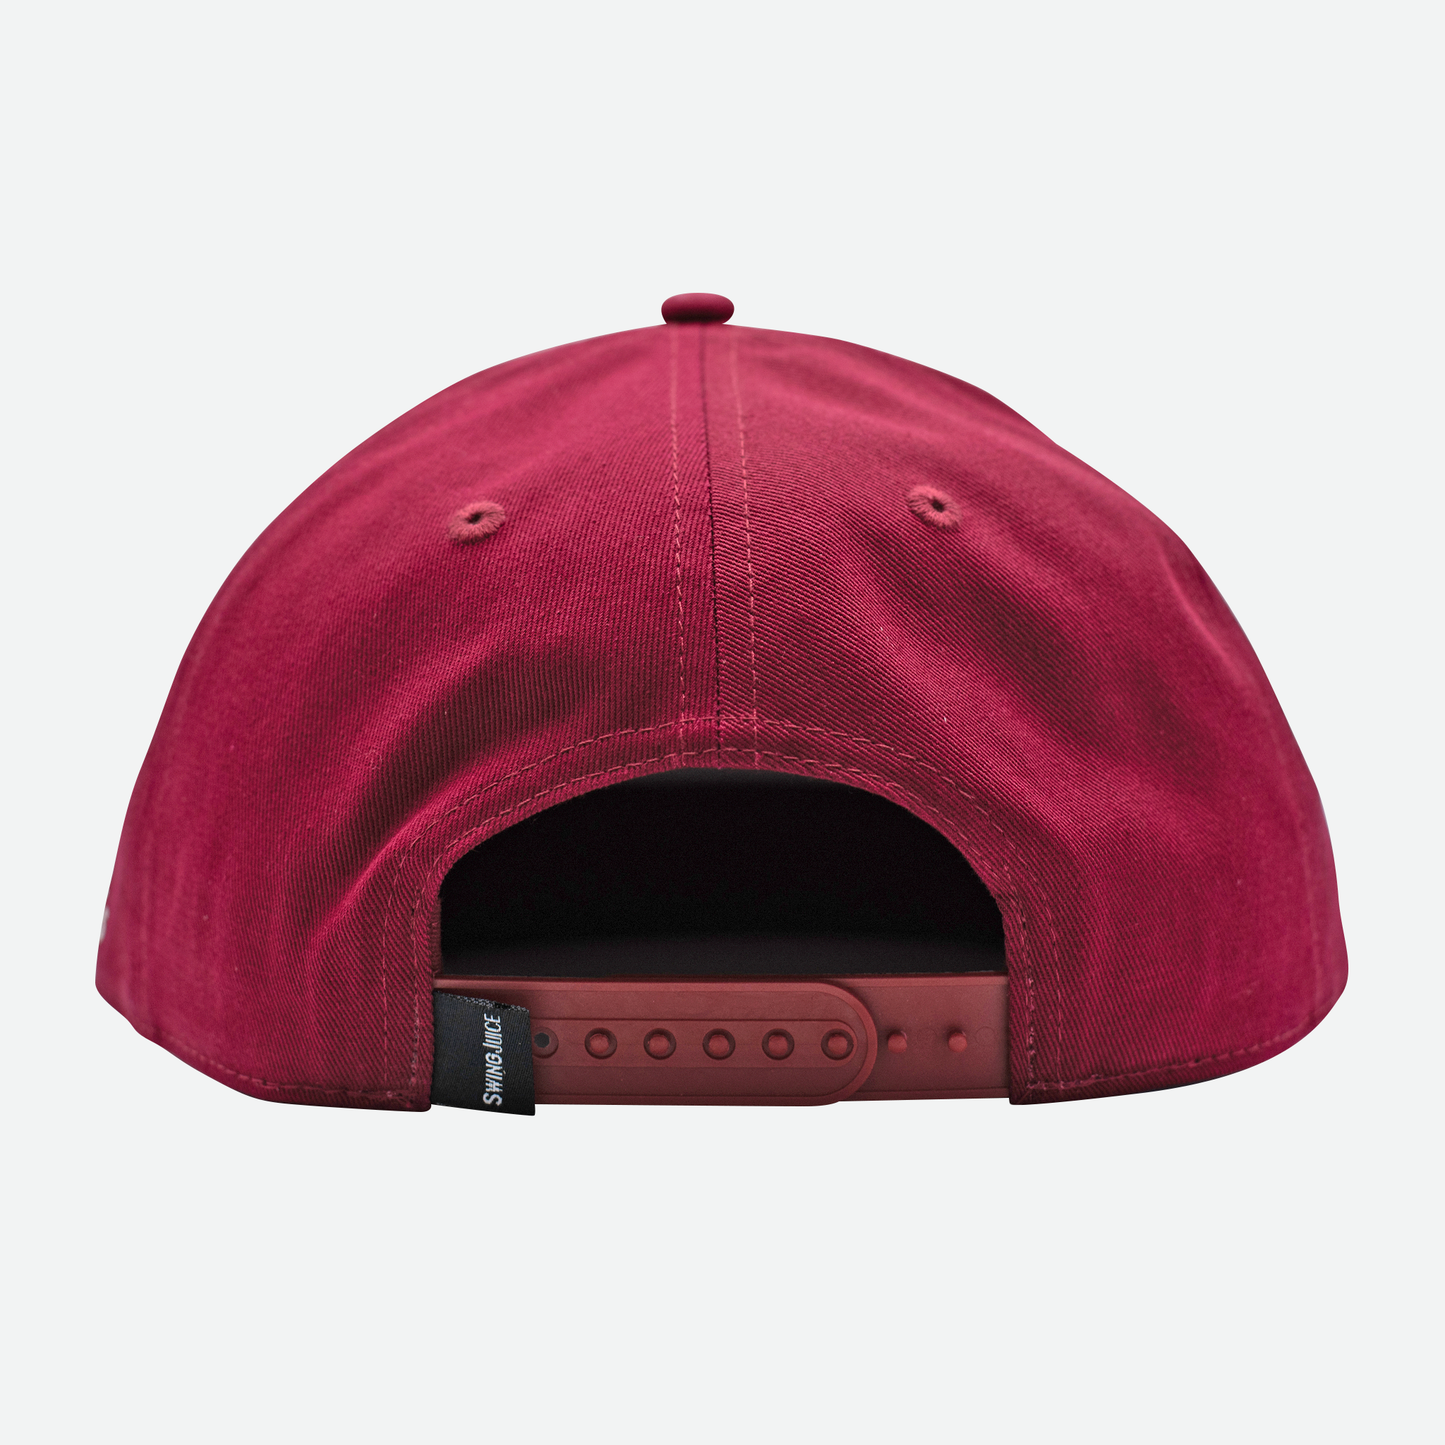 Golf Chicago Muni Unisex Snapback Hat-Khaki/Maroon